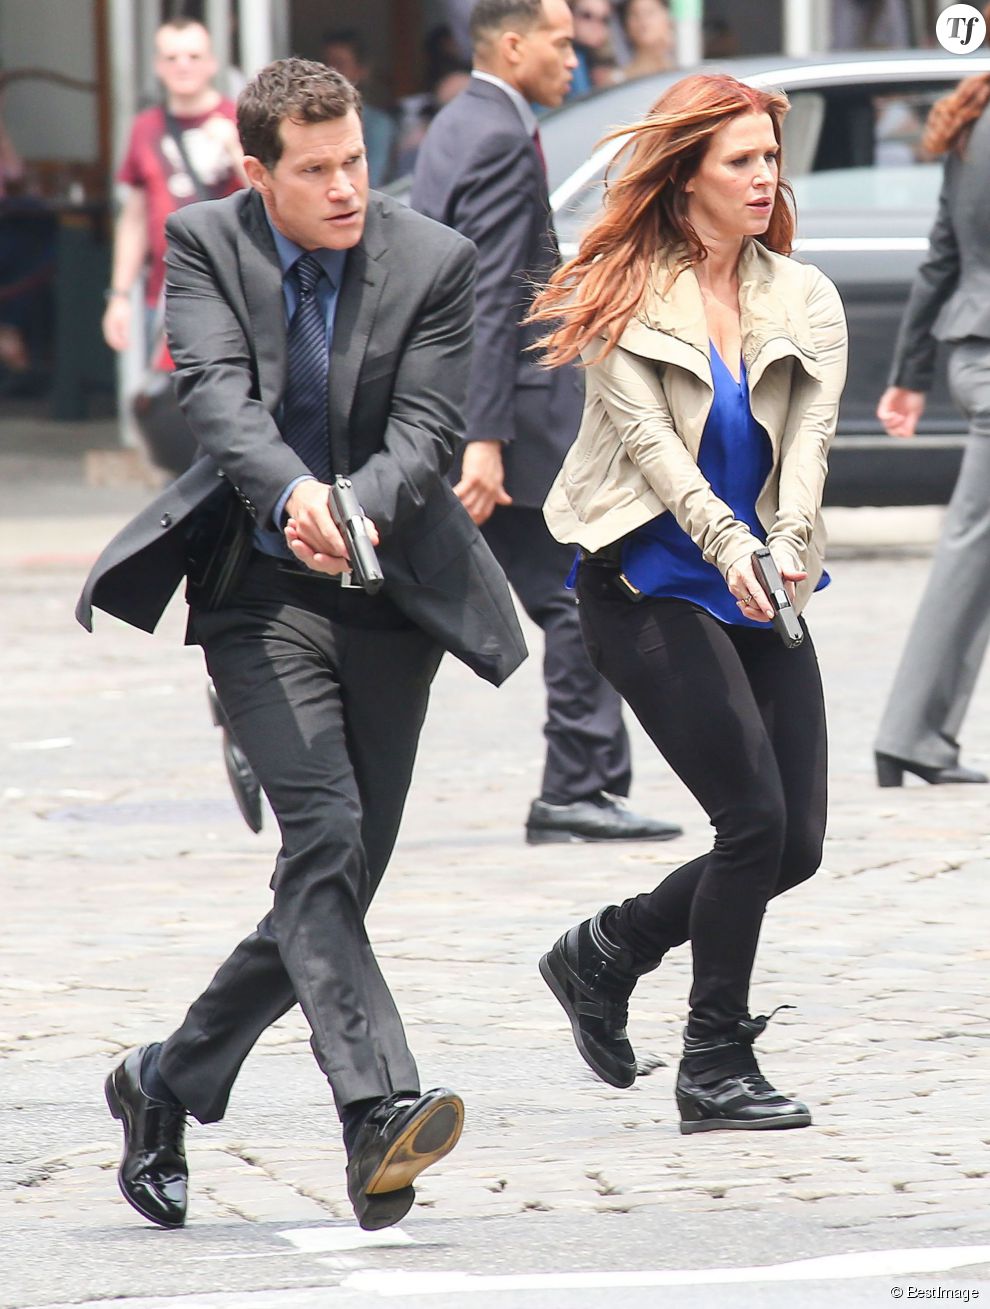  Poppy Montgomery et Dylan Walsh sur le tournage de la serie Unforgettable a New York, le 29 mai 2013.  